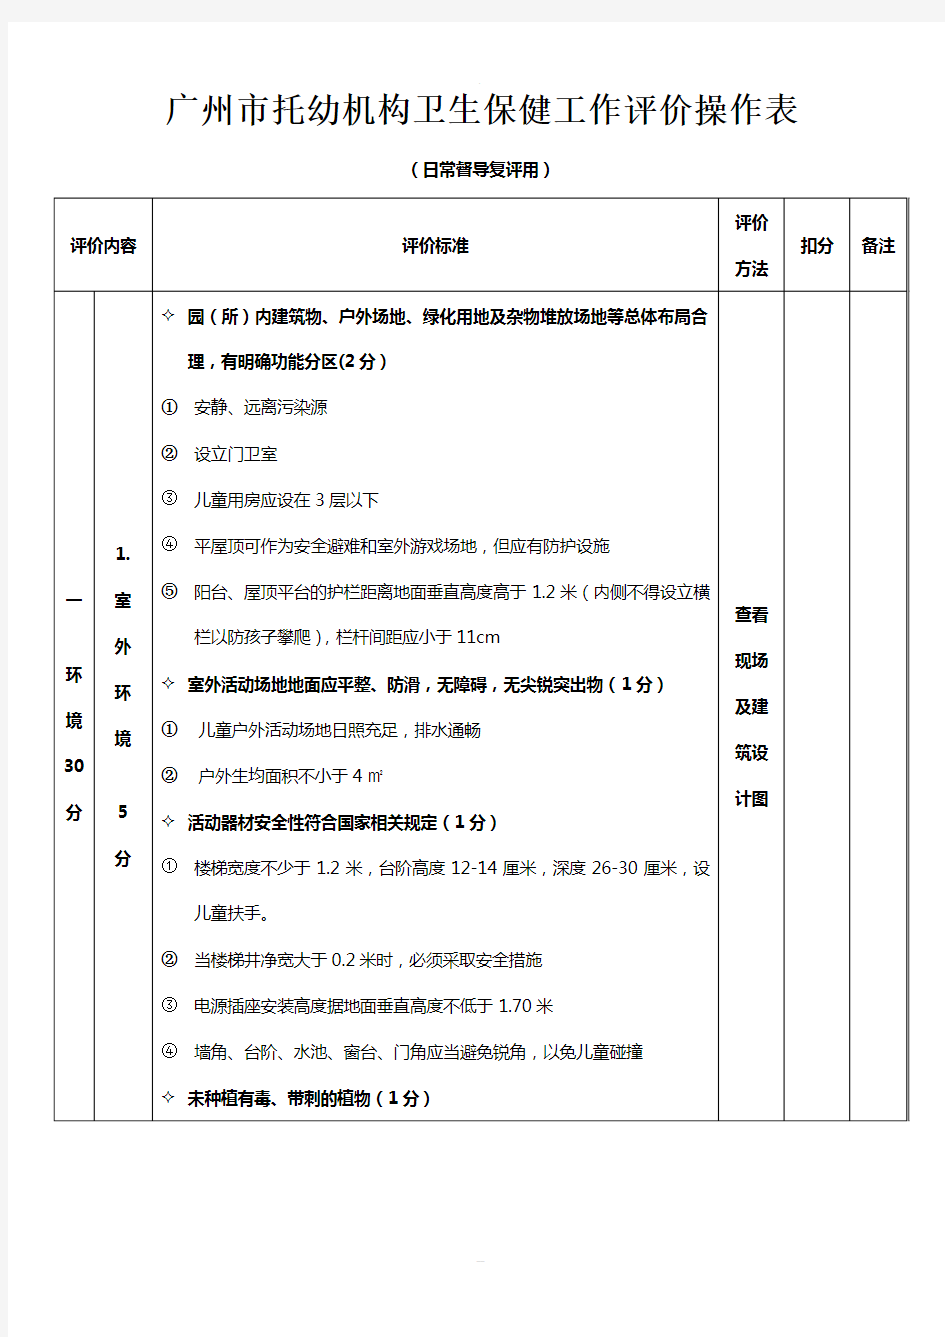 广州市托幼机构卫生保健评价标准--